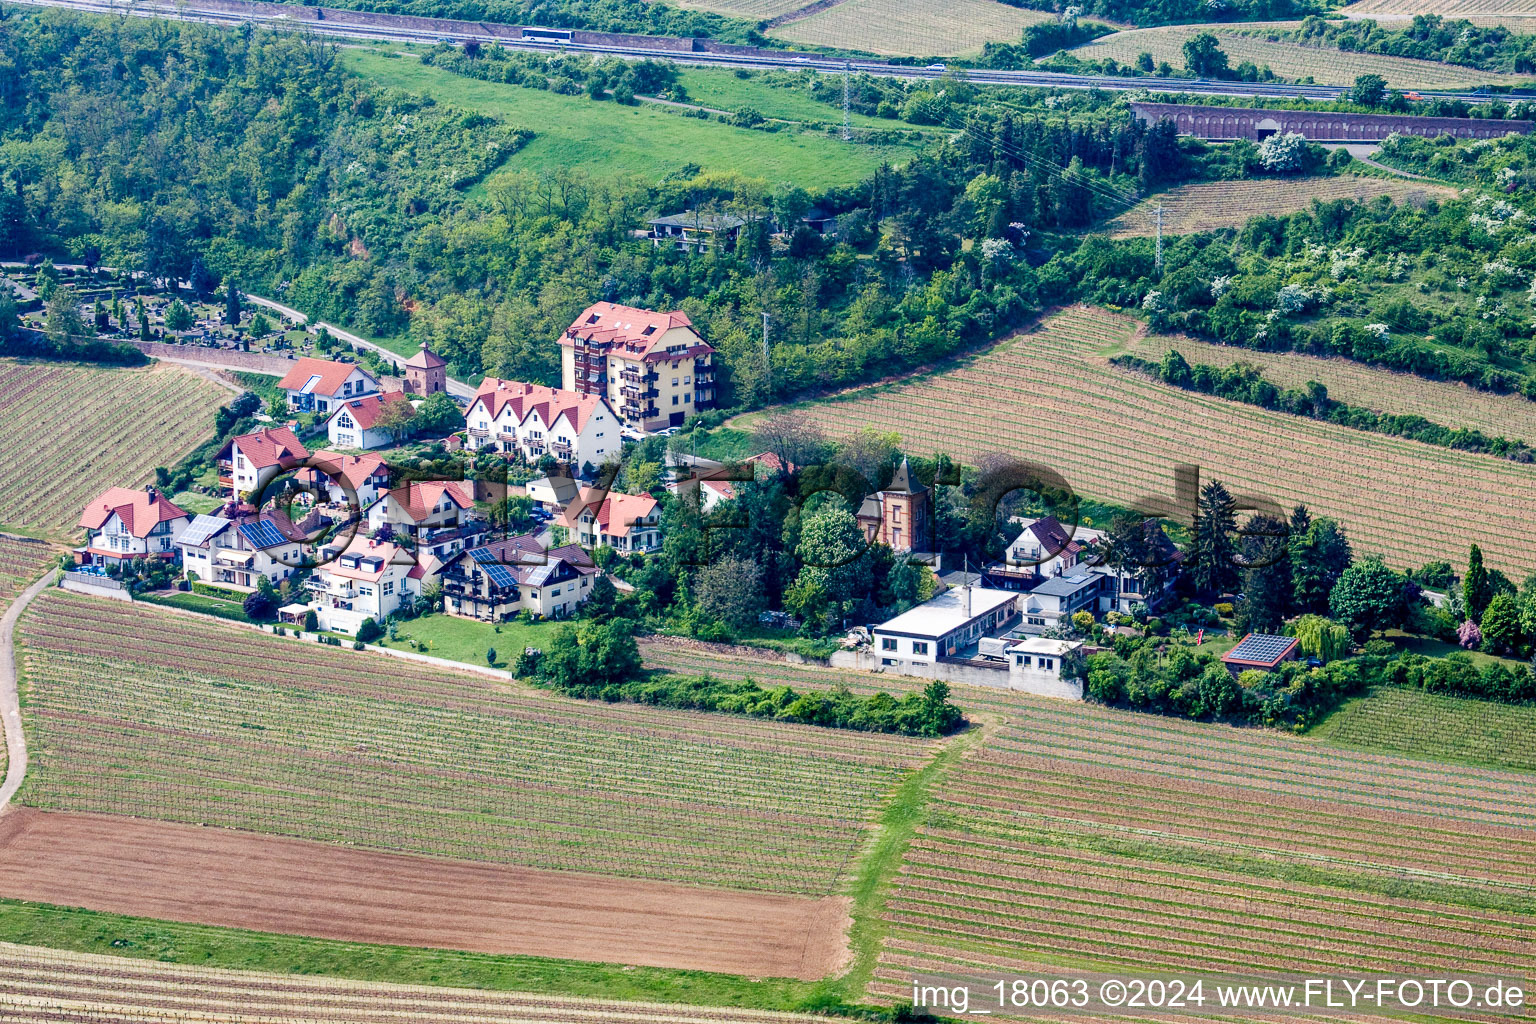 Vue aérienne de Quartier de la Sausenheimerstrasse à Neuleiningen dans le département Rhénanie-Palatinat, Allemagne